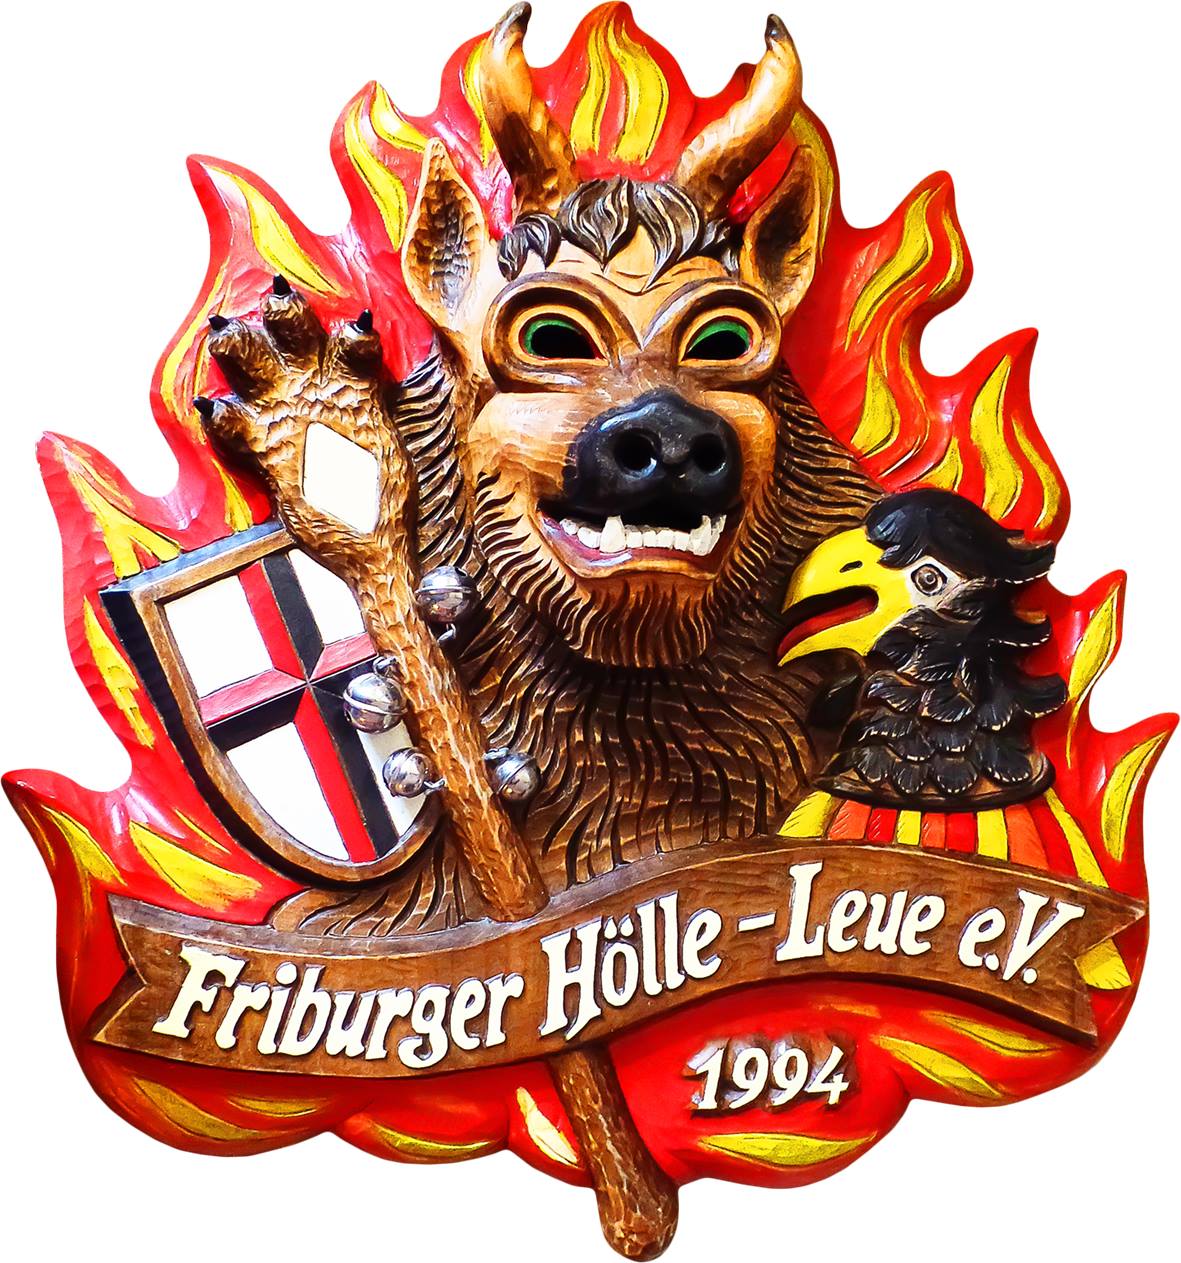 firburger hoelle leue rieselfeld logo